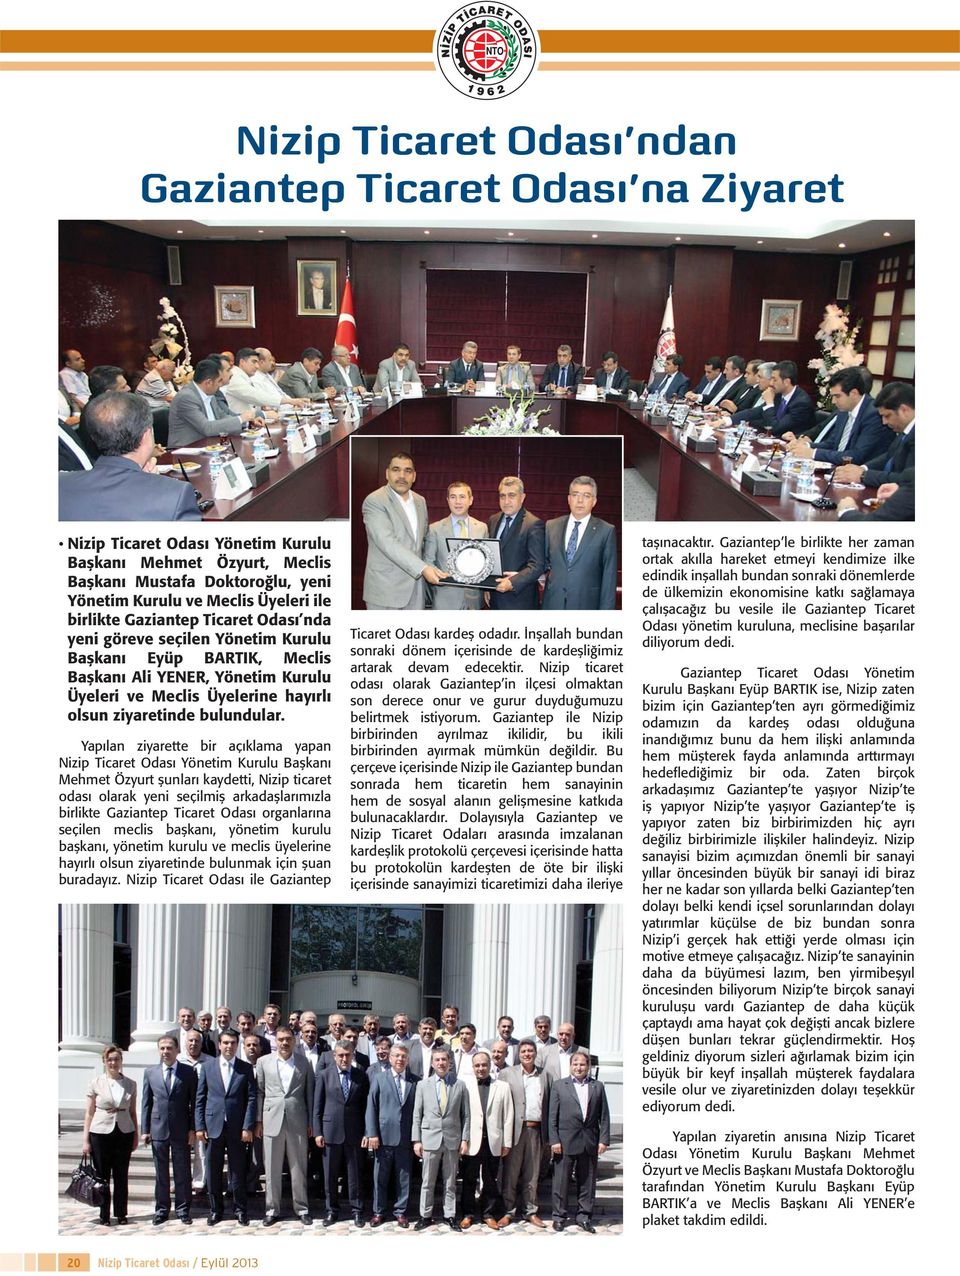 Yapılan ziyarette bir açıklama yapan Nizip Ticaret Odası Yönetim Kurulu Başkanı Mehmet Özyurt şunları kaydetti, Nizip ticaret odası olarak yeni seçilmiş arkadaşlarımızla birlikte Gaziantep Ticaret